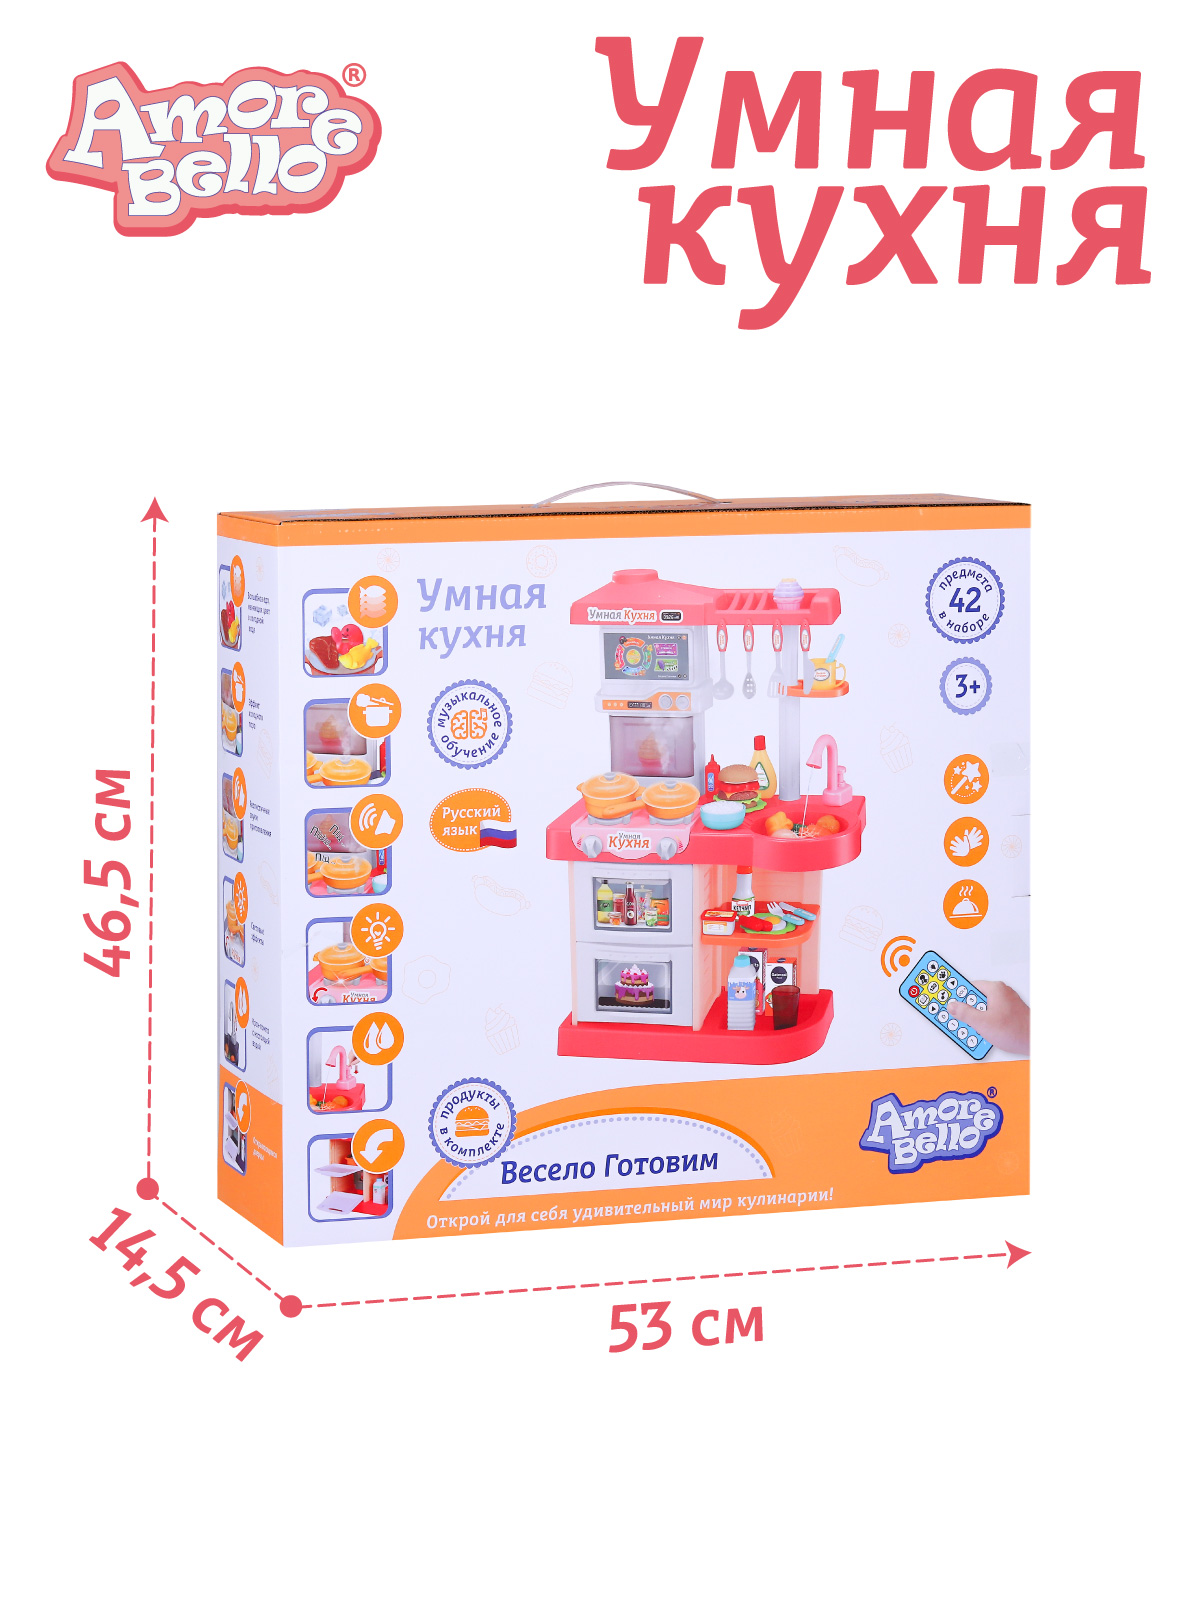 Игровой набор детский AMORE BELLO Умная Кухня с пультом с паром и кран с водой игрушечные продукты и посуда JB0209161 - фото 8